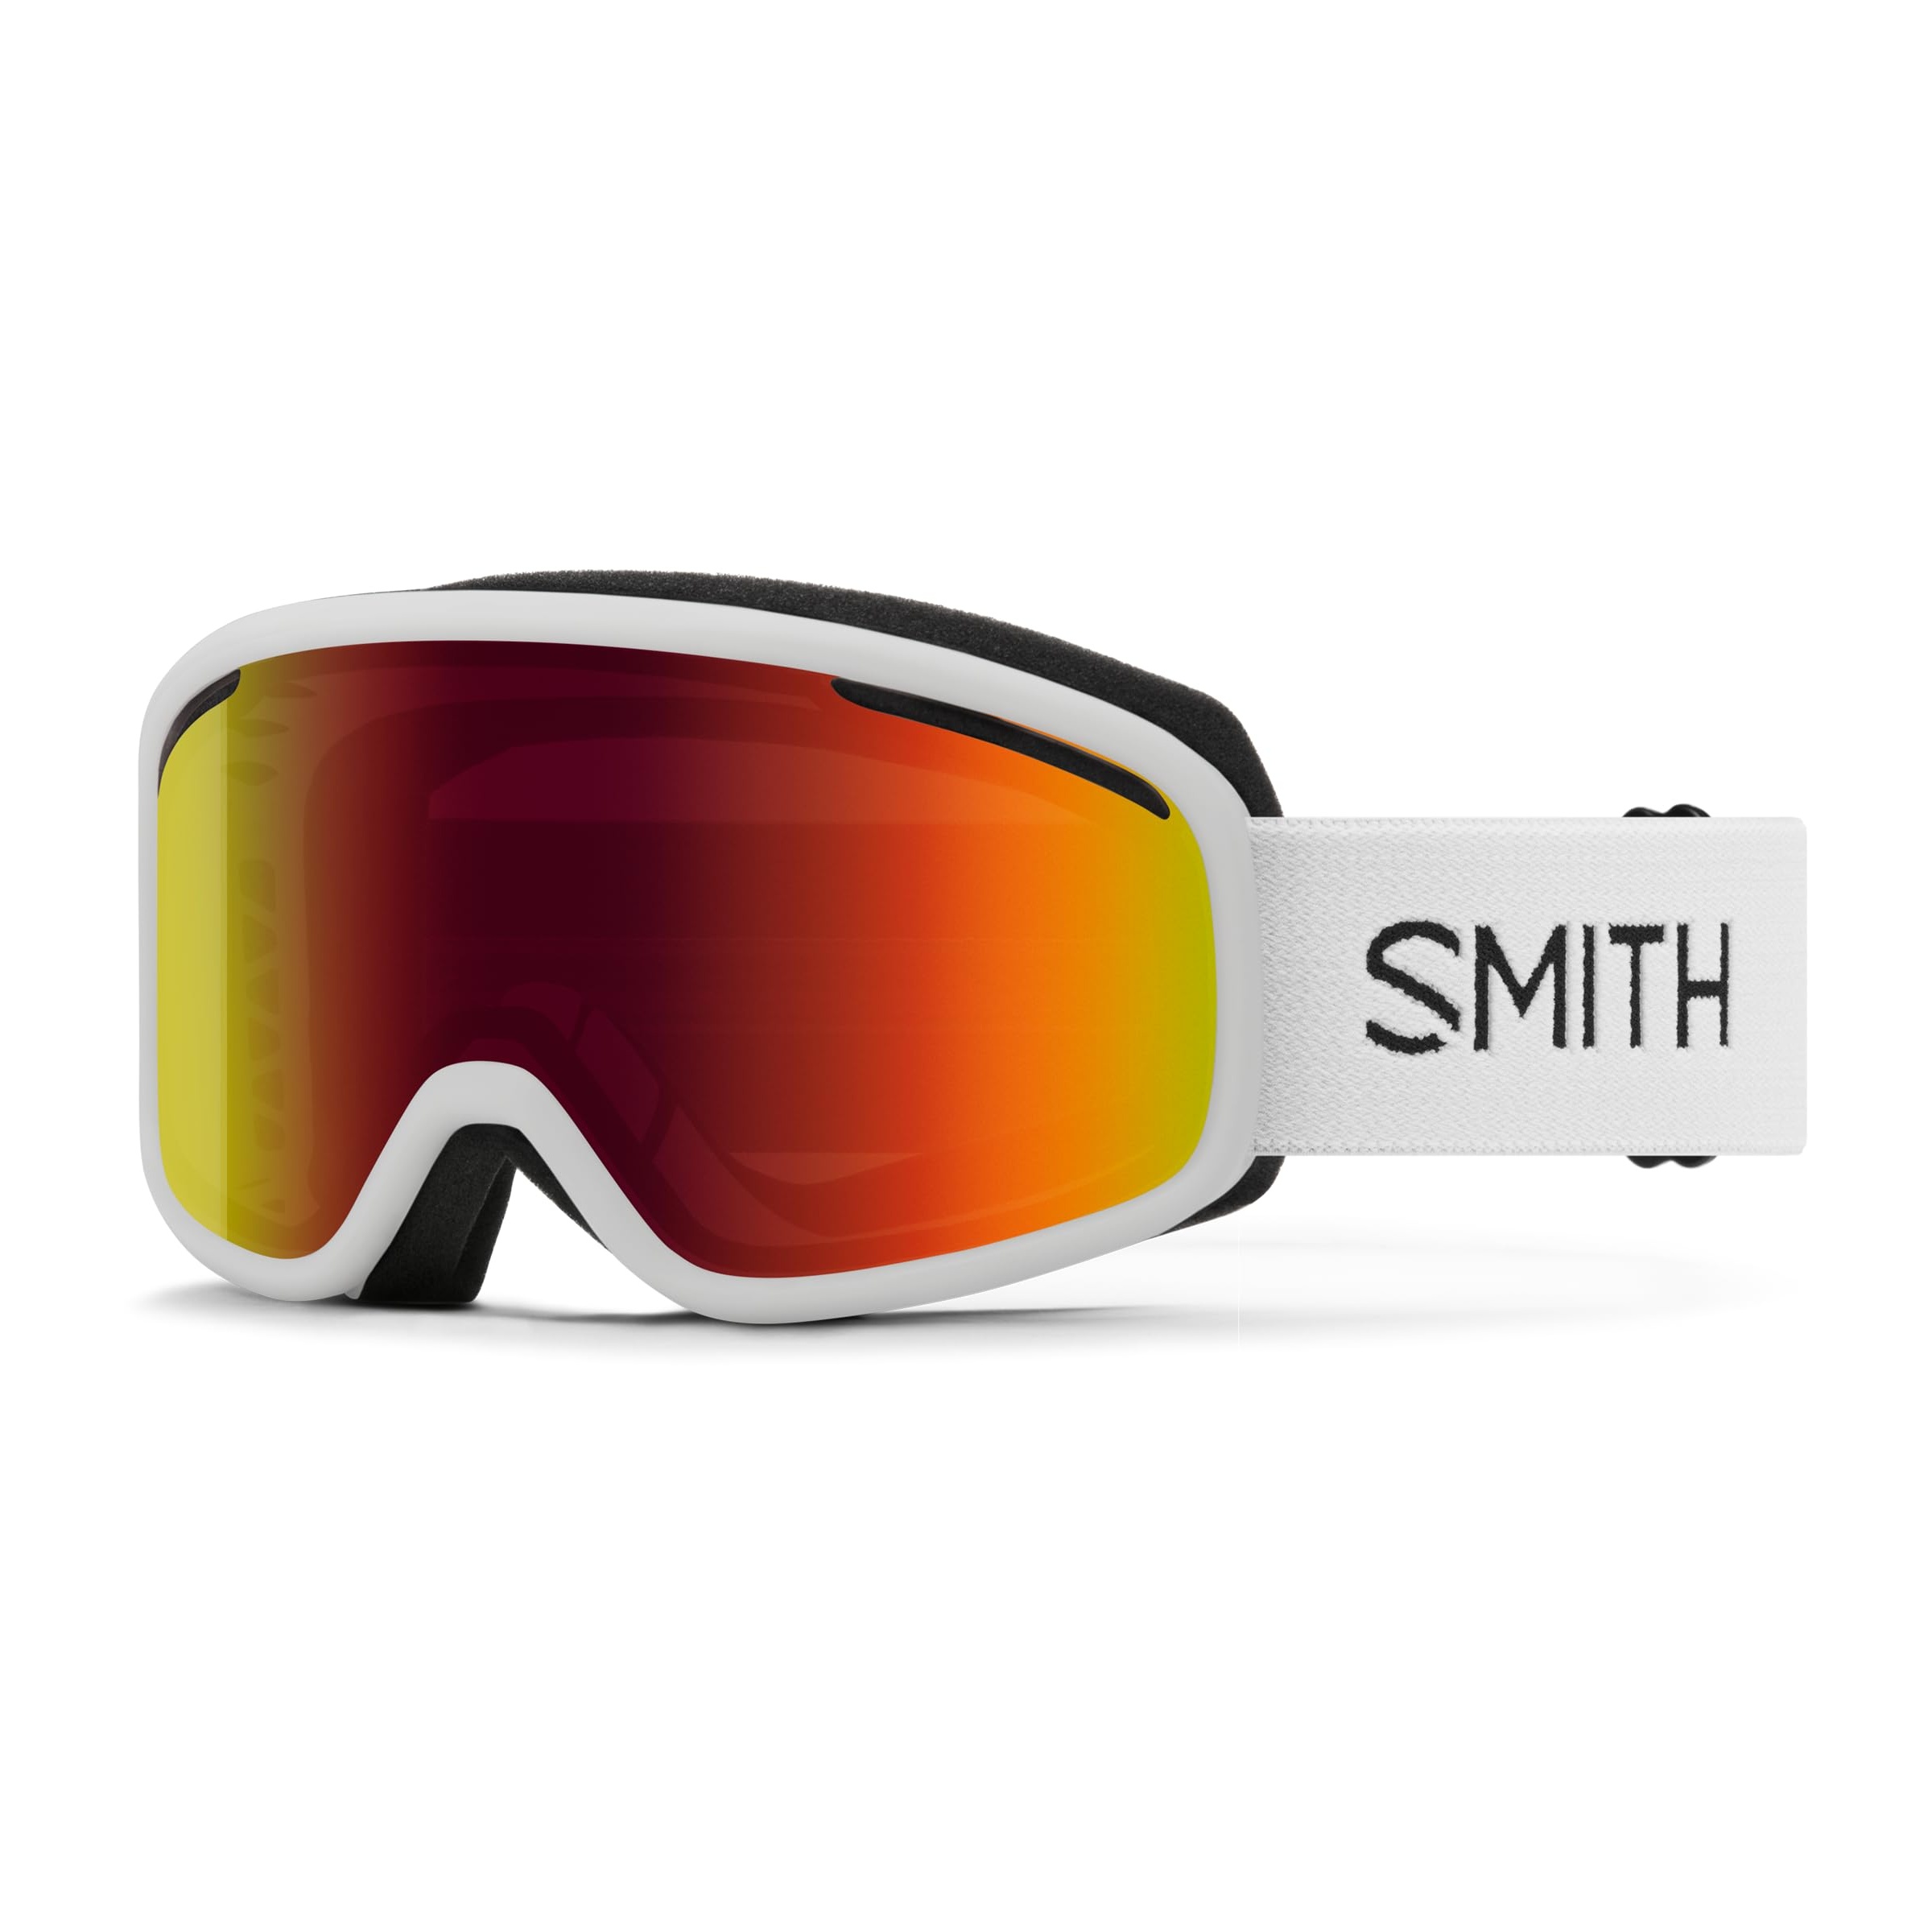 smith optics skibrille